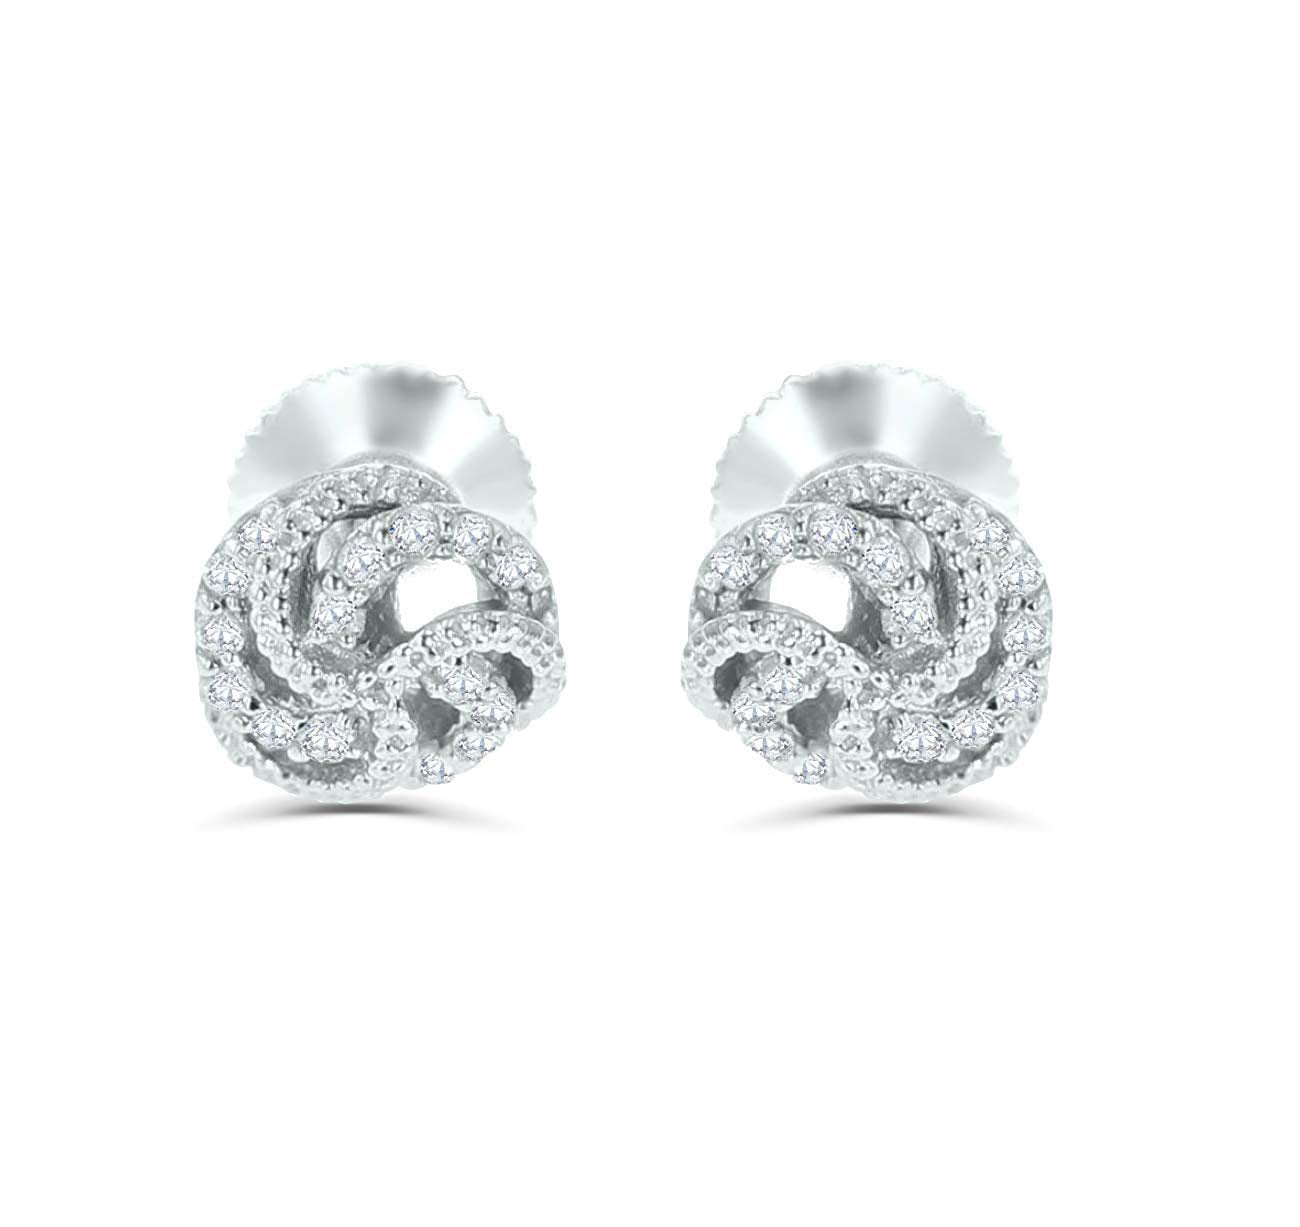 14K White Gold Diamond Earrings for Women Knot Earrings Screw on Back 1/5ctw Diamond 7mm Round Studs